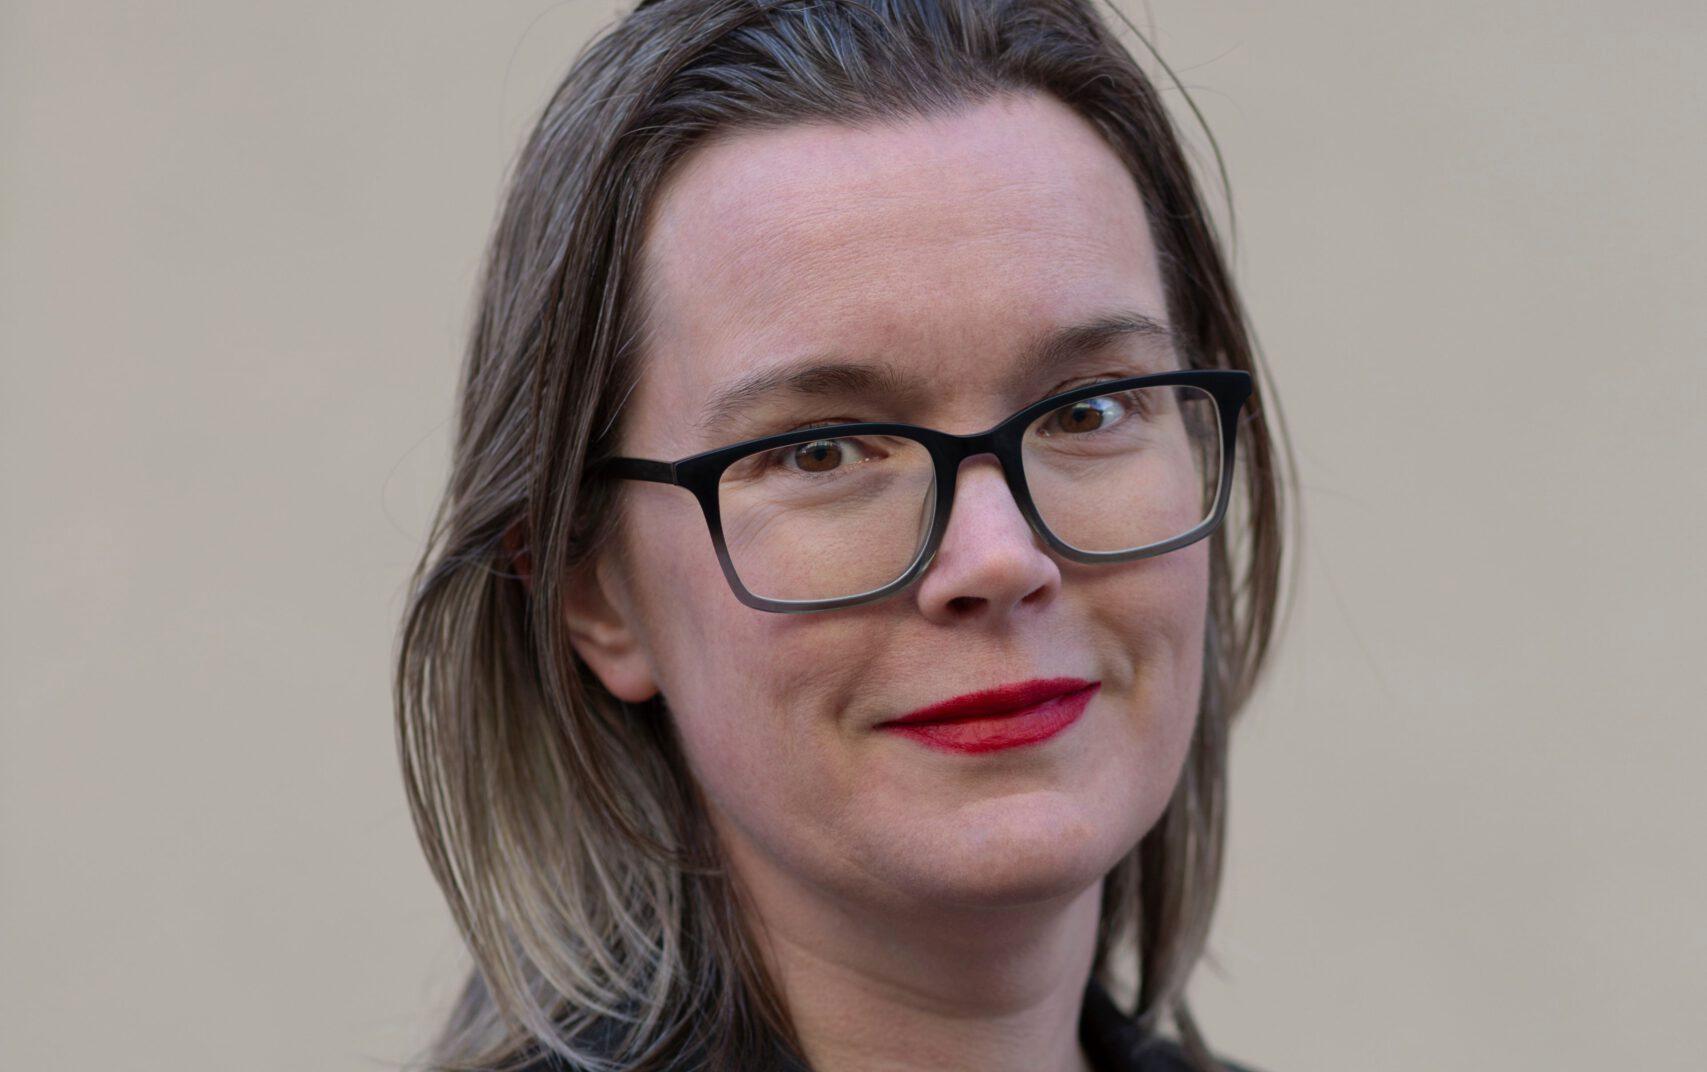 Jona Elings Knutsson är läkare och och debuterade som författare år 2020 med ”Krokodilens vändkrets”. ”Kattjakten” är hennes andra roman. 